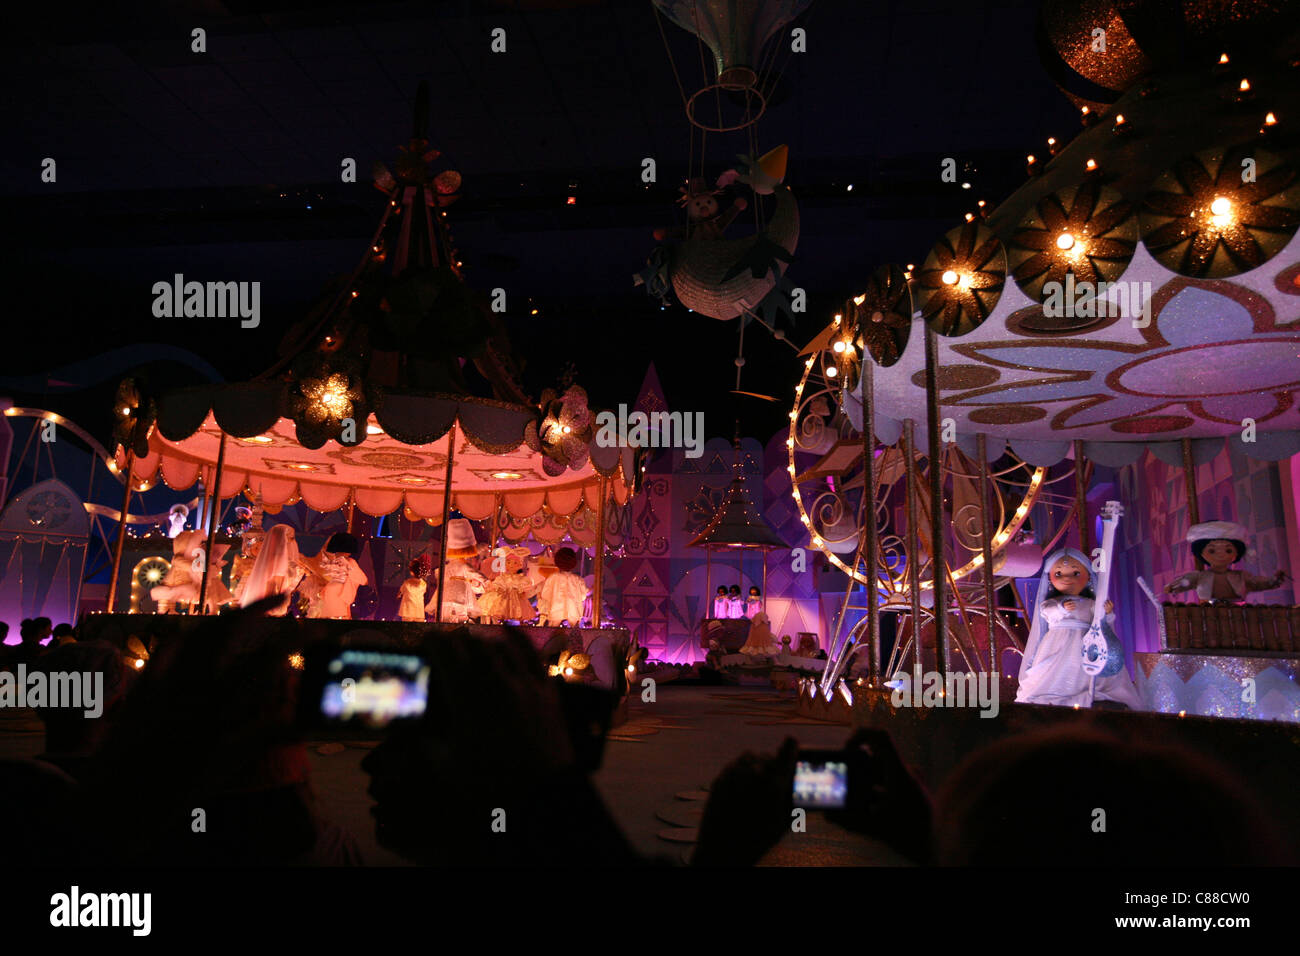 L'intérieur populaire croisière en bateau c'est un petit monde dans la thématique de la terre de Fantasyland à Disneyland Paris, France. Banque D'Images